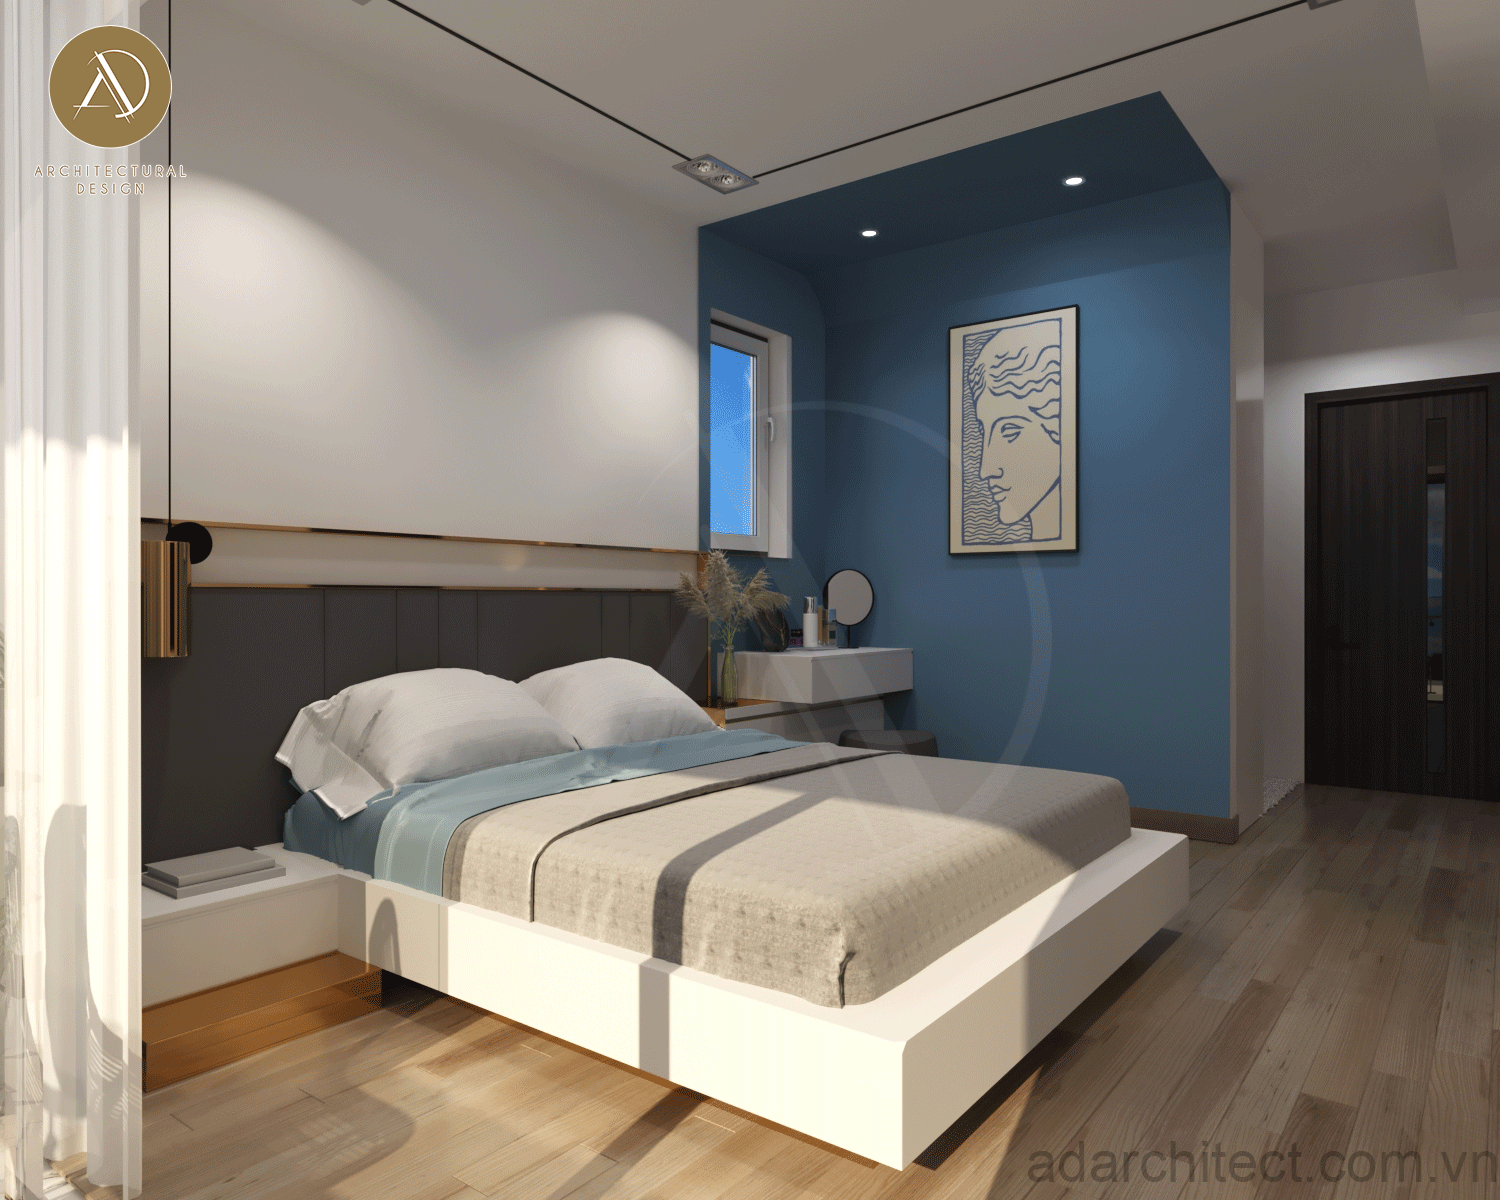 thiết kế phòng ngủ tối giản, hiện đại cho căn hộ chung cư 90m2 2 phòng ngủ